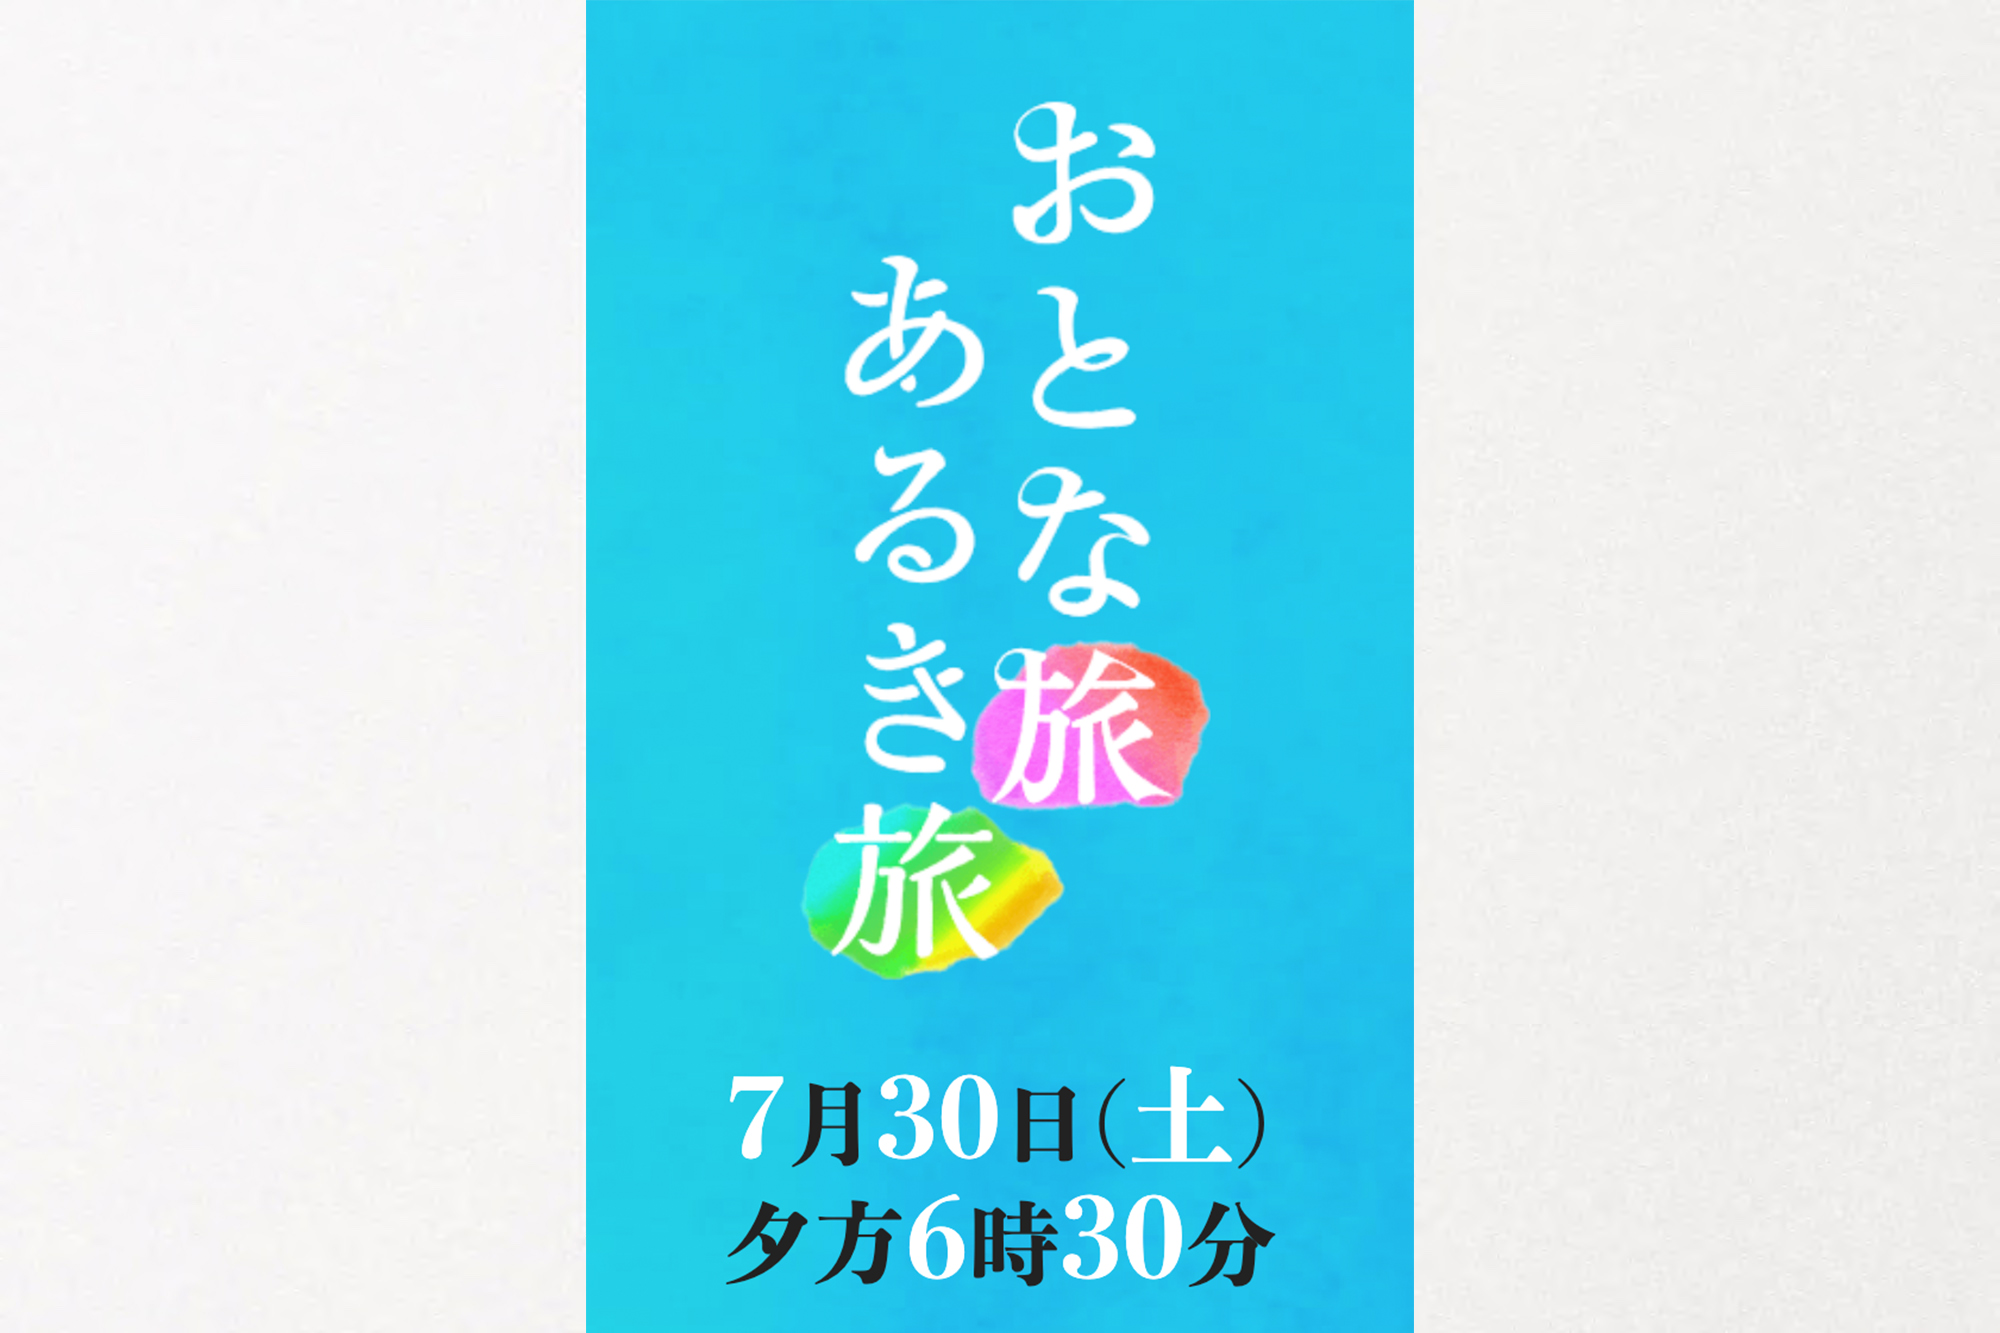 TV大阪 三田村邦彦さんMC「おとな旅あるき旅」〜夏の堺 美食さんぽ〜